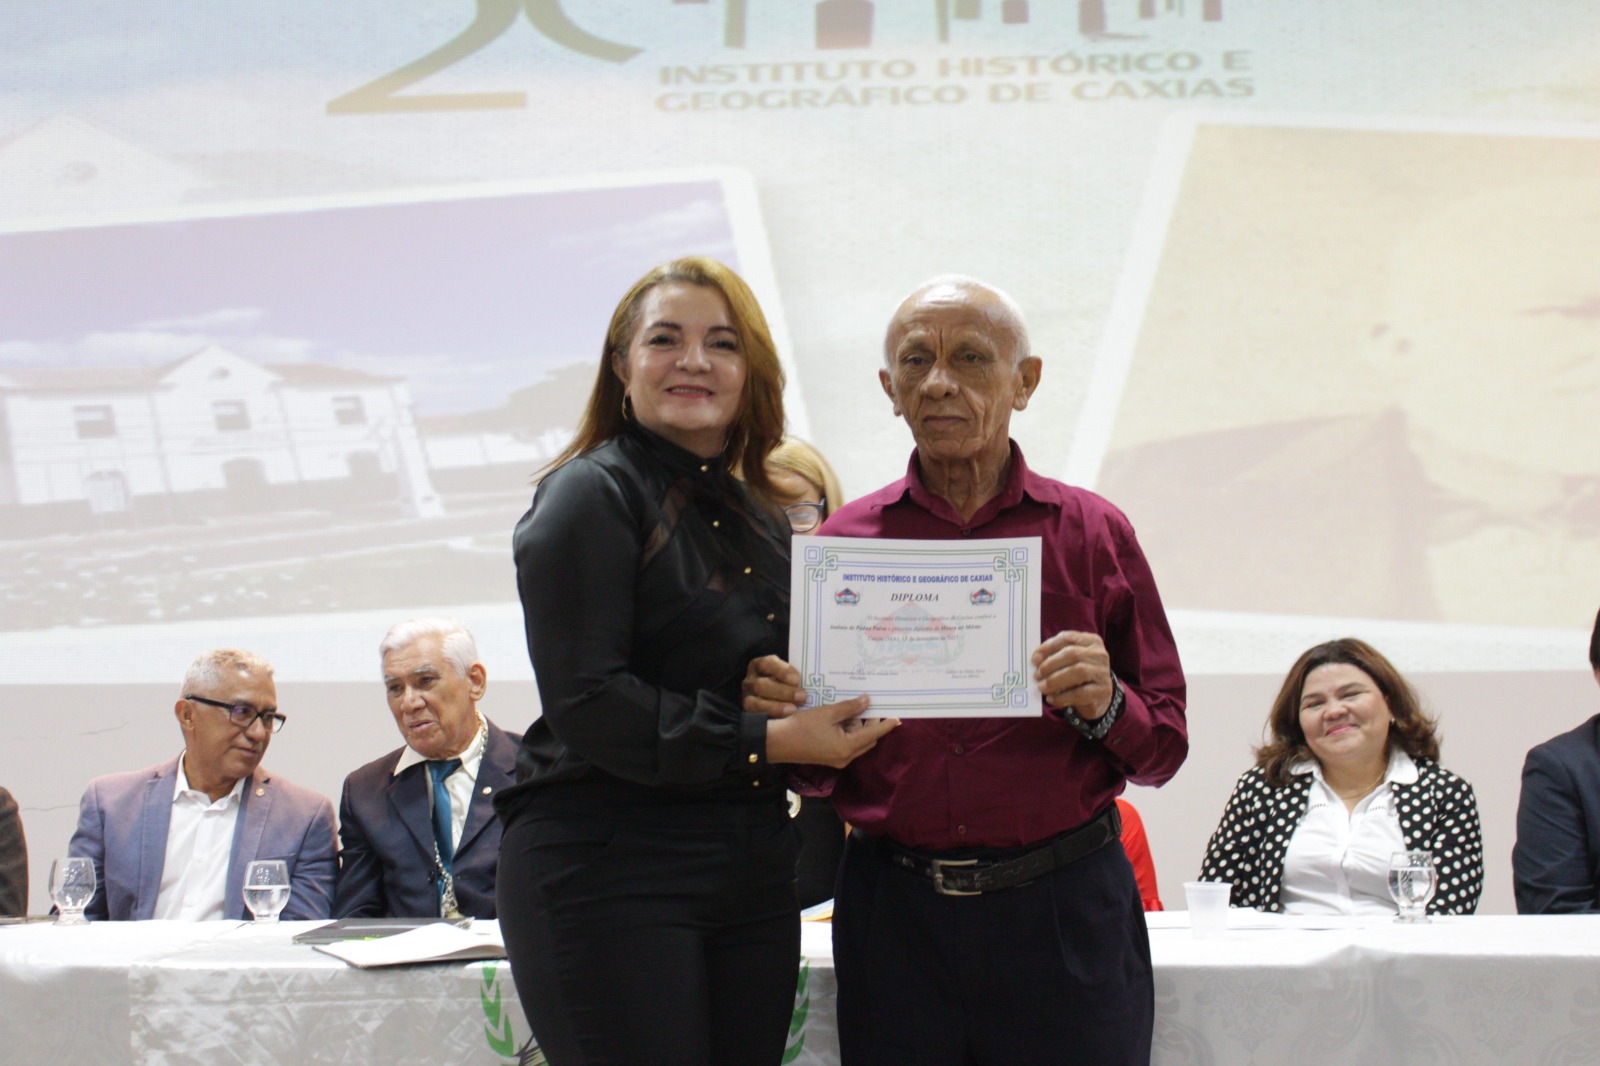 Mantenedoras do UniFacema participam da comemoração dos 20 anos de fundação do Instituto Histórico e Geográfico de Caxias (IHGC)